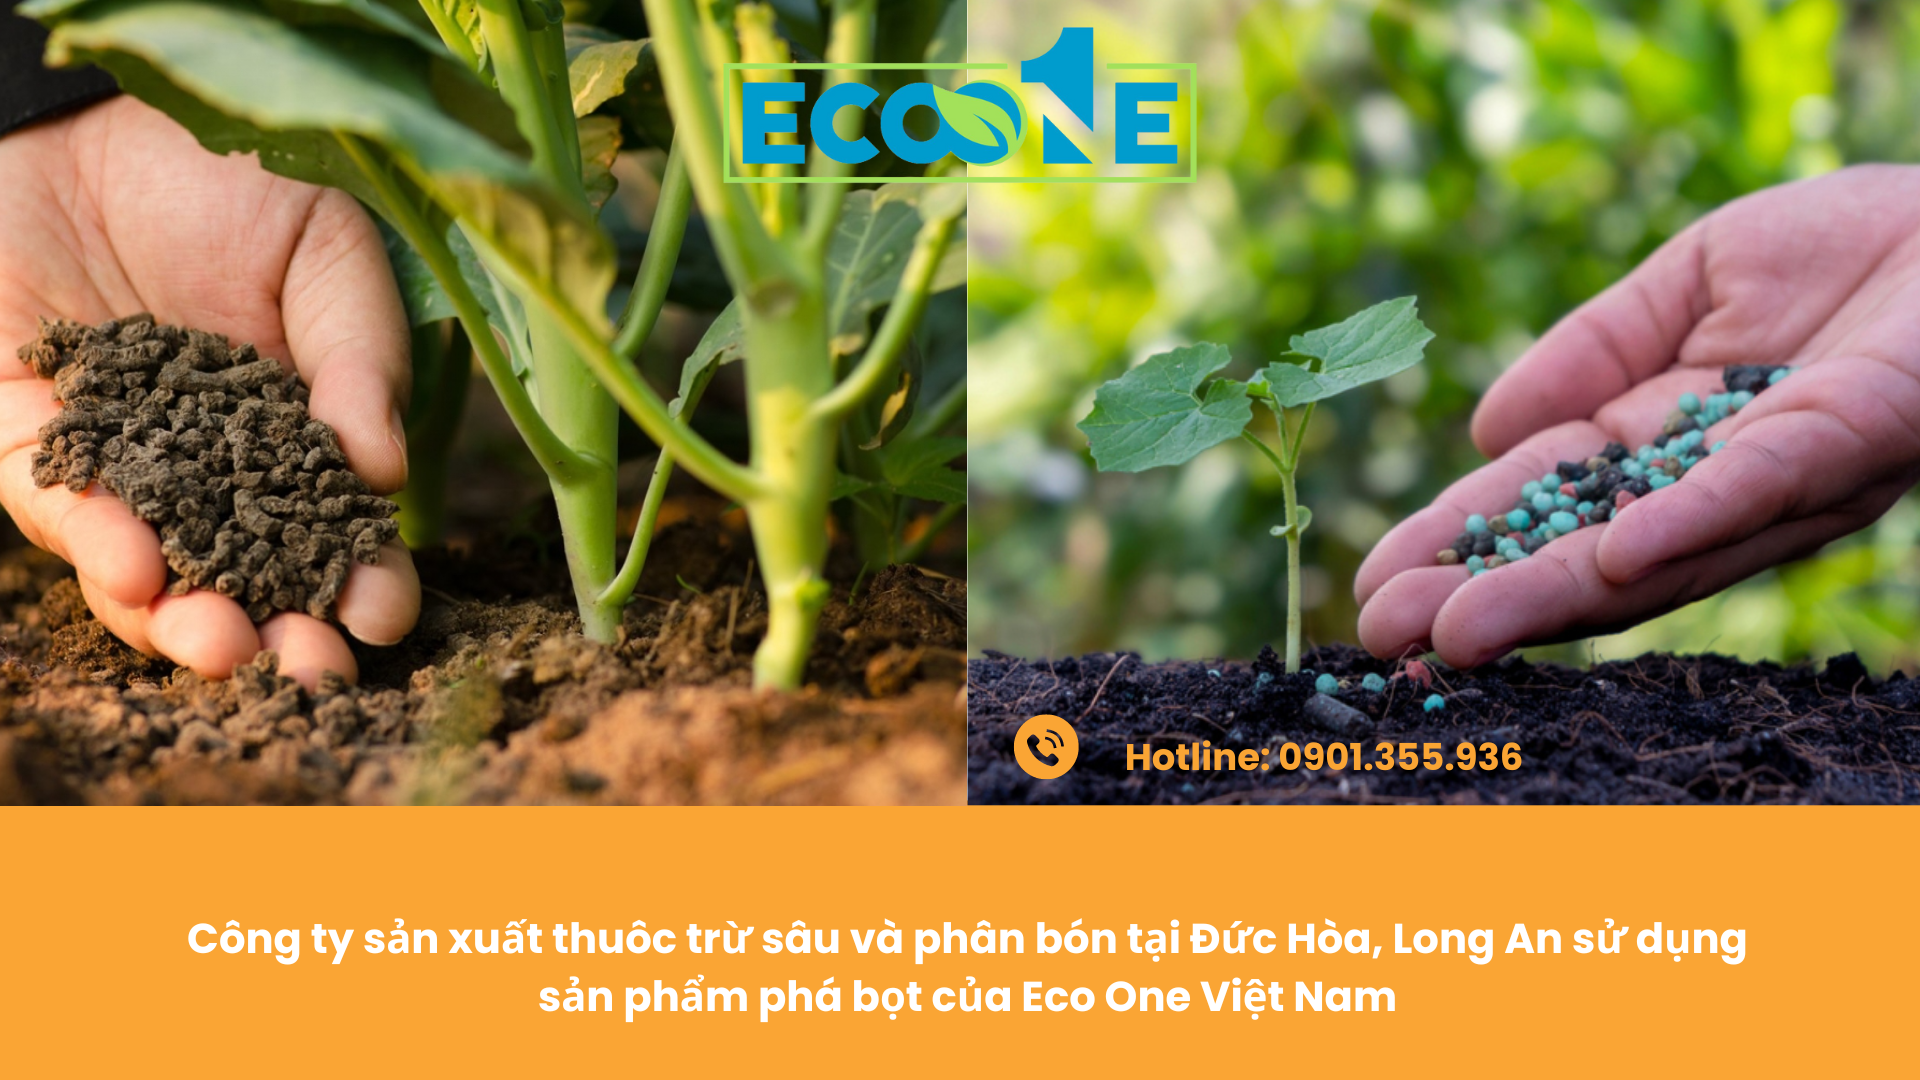 Công ty sản xuất thuôc trừ sâu và phân bón tại Đức Hòa, Long An sử dụng sản phẩm phá bọt của Eco One Việt Nam